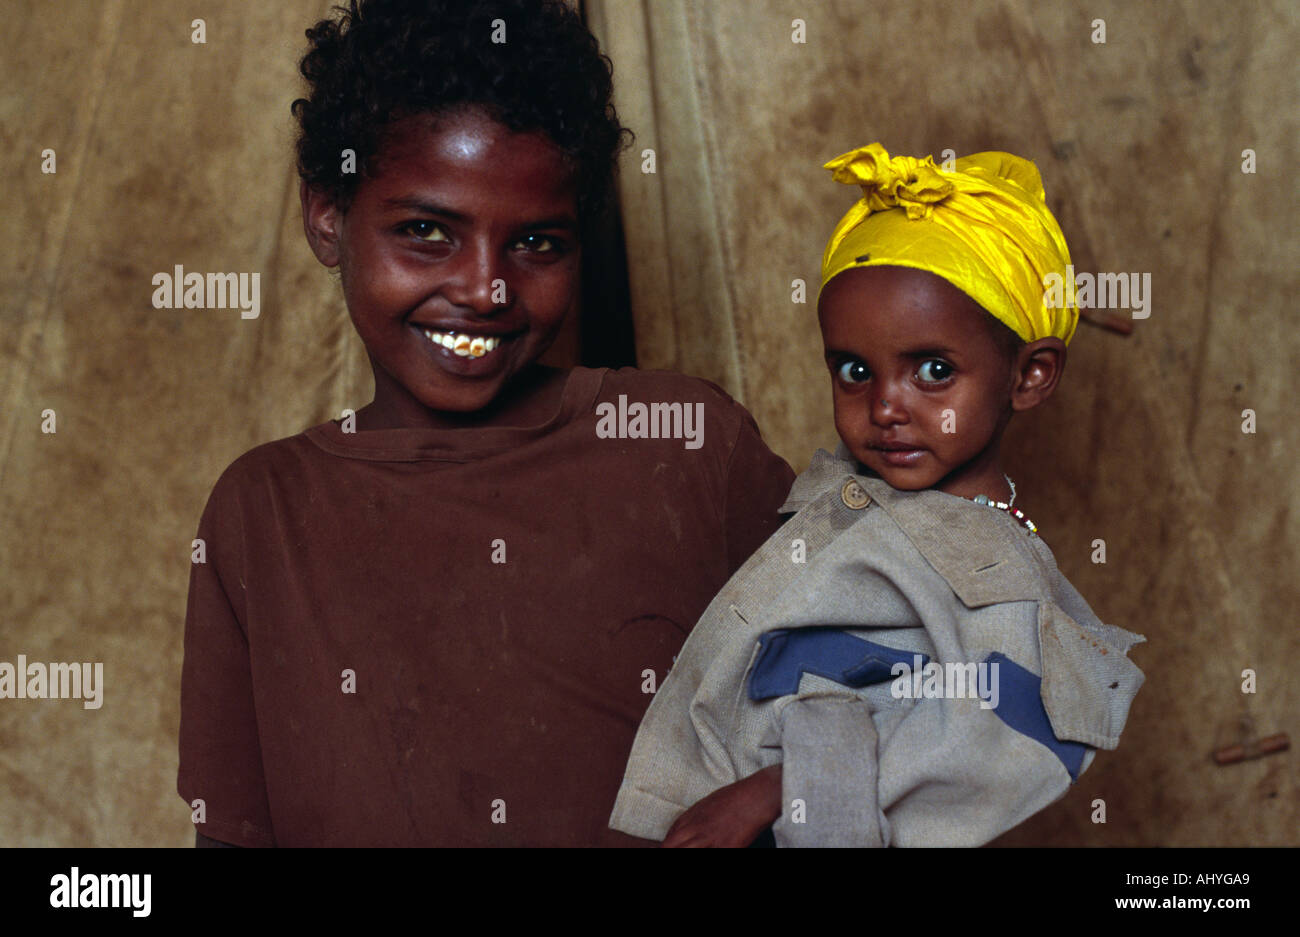 Bruder und Schwester in einem somalischen Flüchtlingslager. Hartisheik, Äthiopien Stockfoto